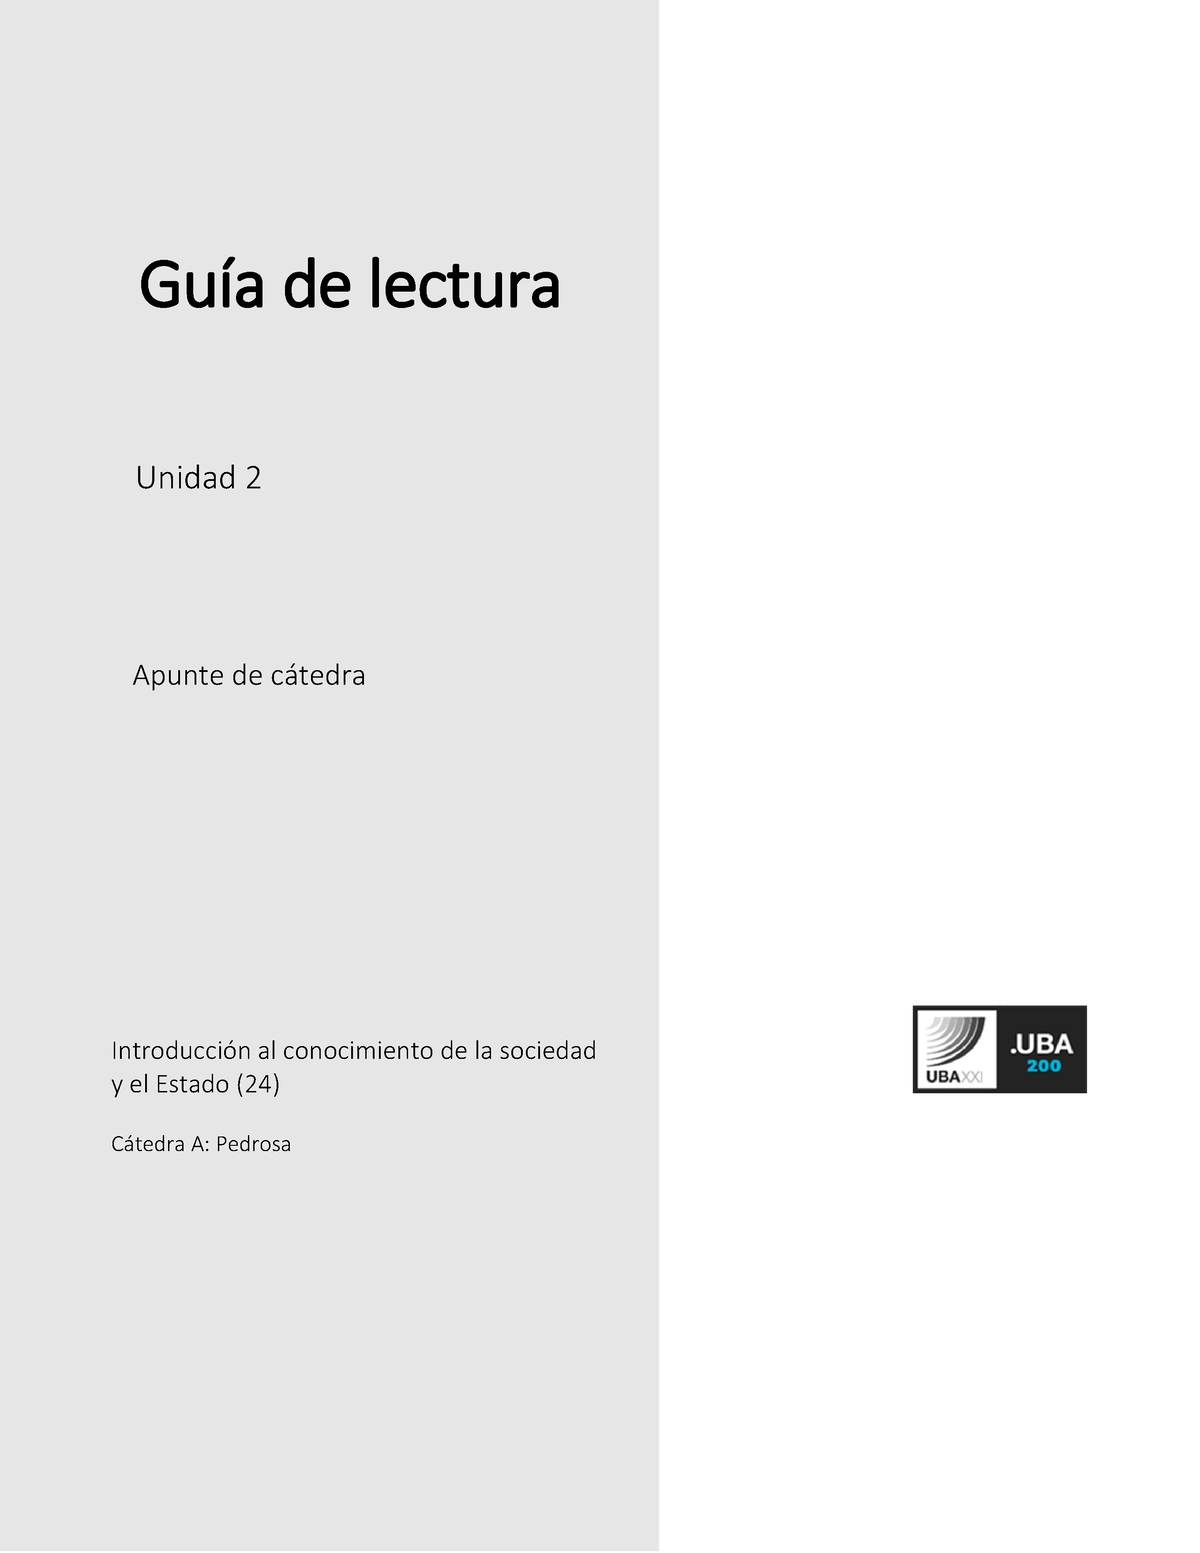 U2 Guía De Lectura Romero Guía De Lectura Unidad 2 Apunte De Cátedra Introducción Al 6434